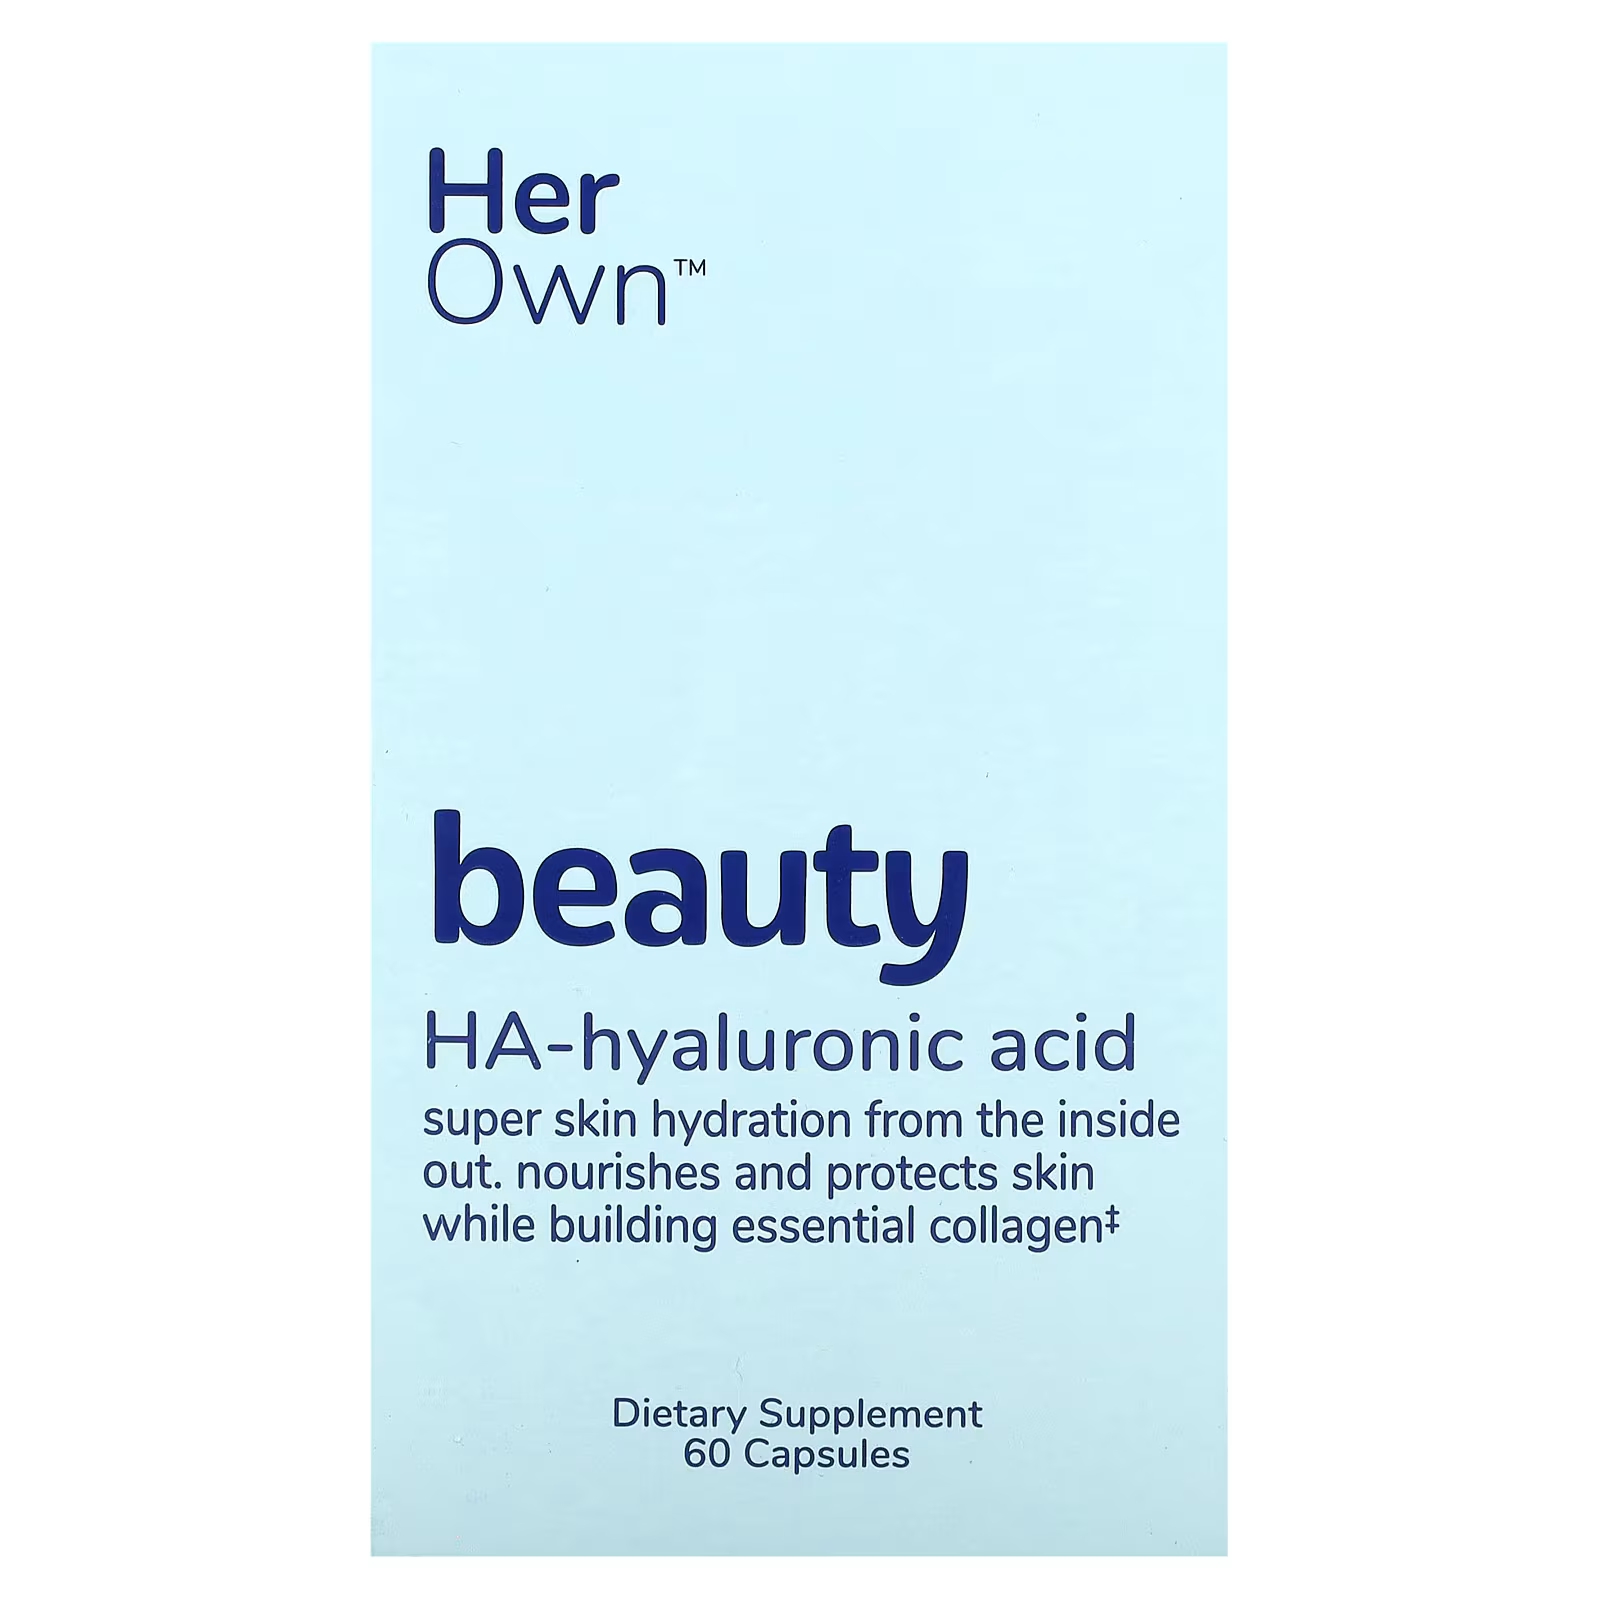 Her Own Beauty HA-гиалуроновая кислота, 60 капсул yango гиалуроновая кислота pro beauty 90 капсул